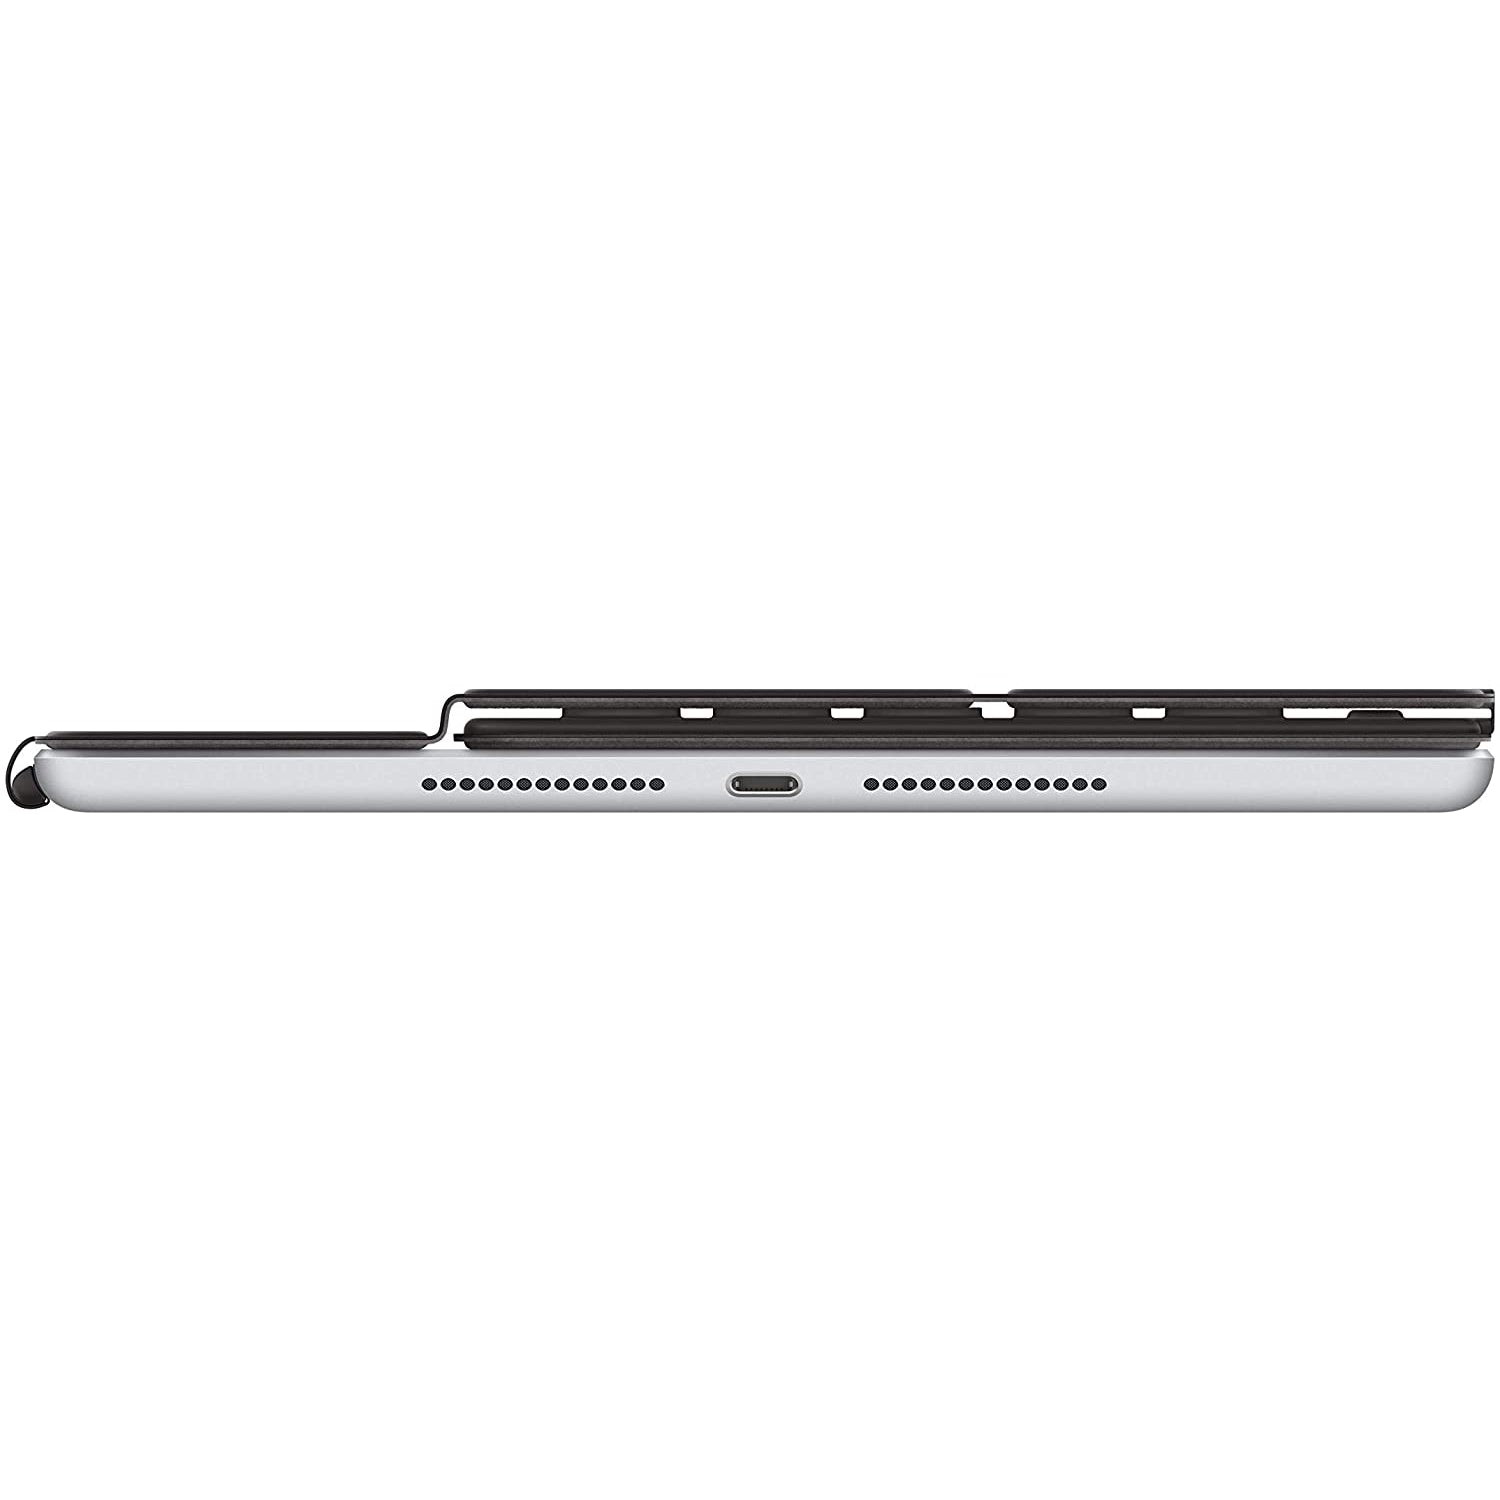 Apple Smart Keyboard MX3L2B/A for 10.5" iPad - Black - New